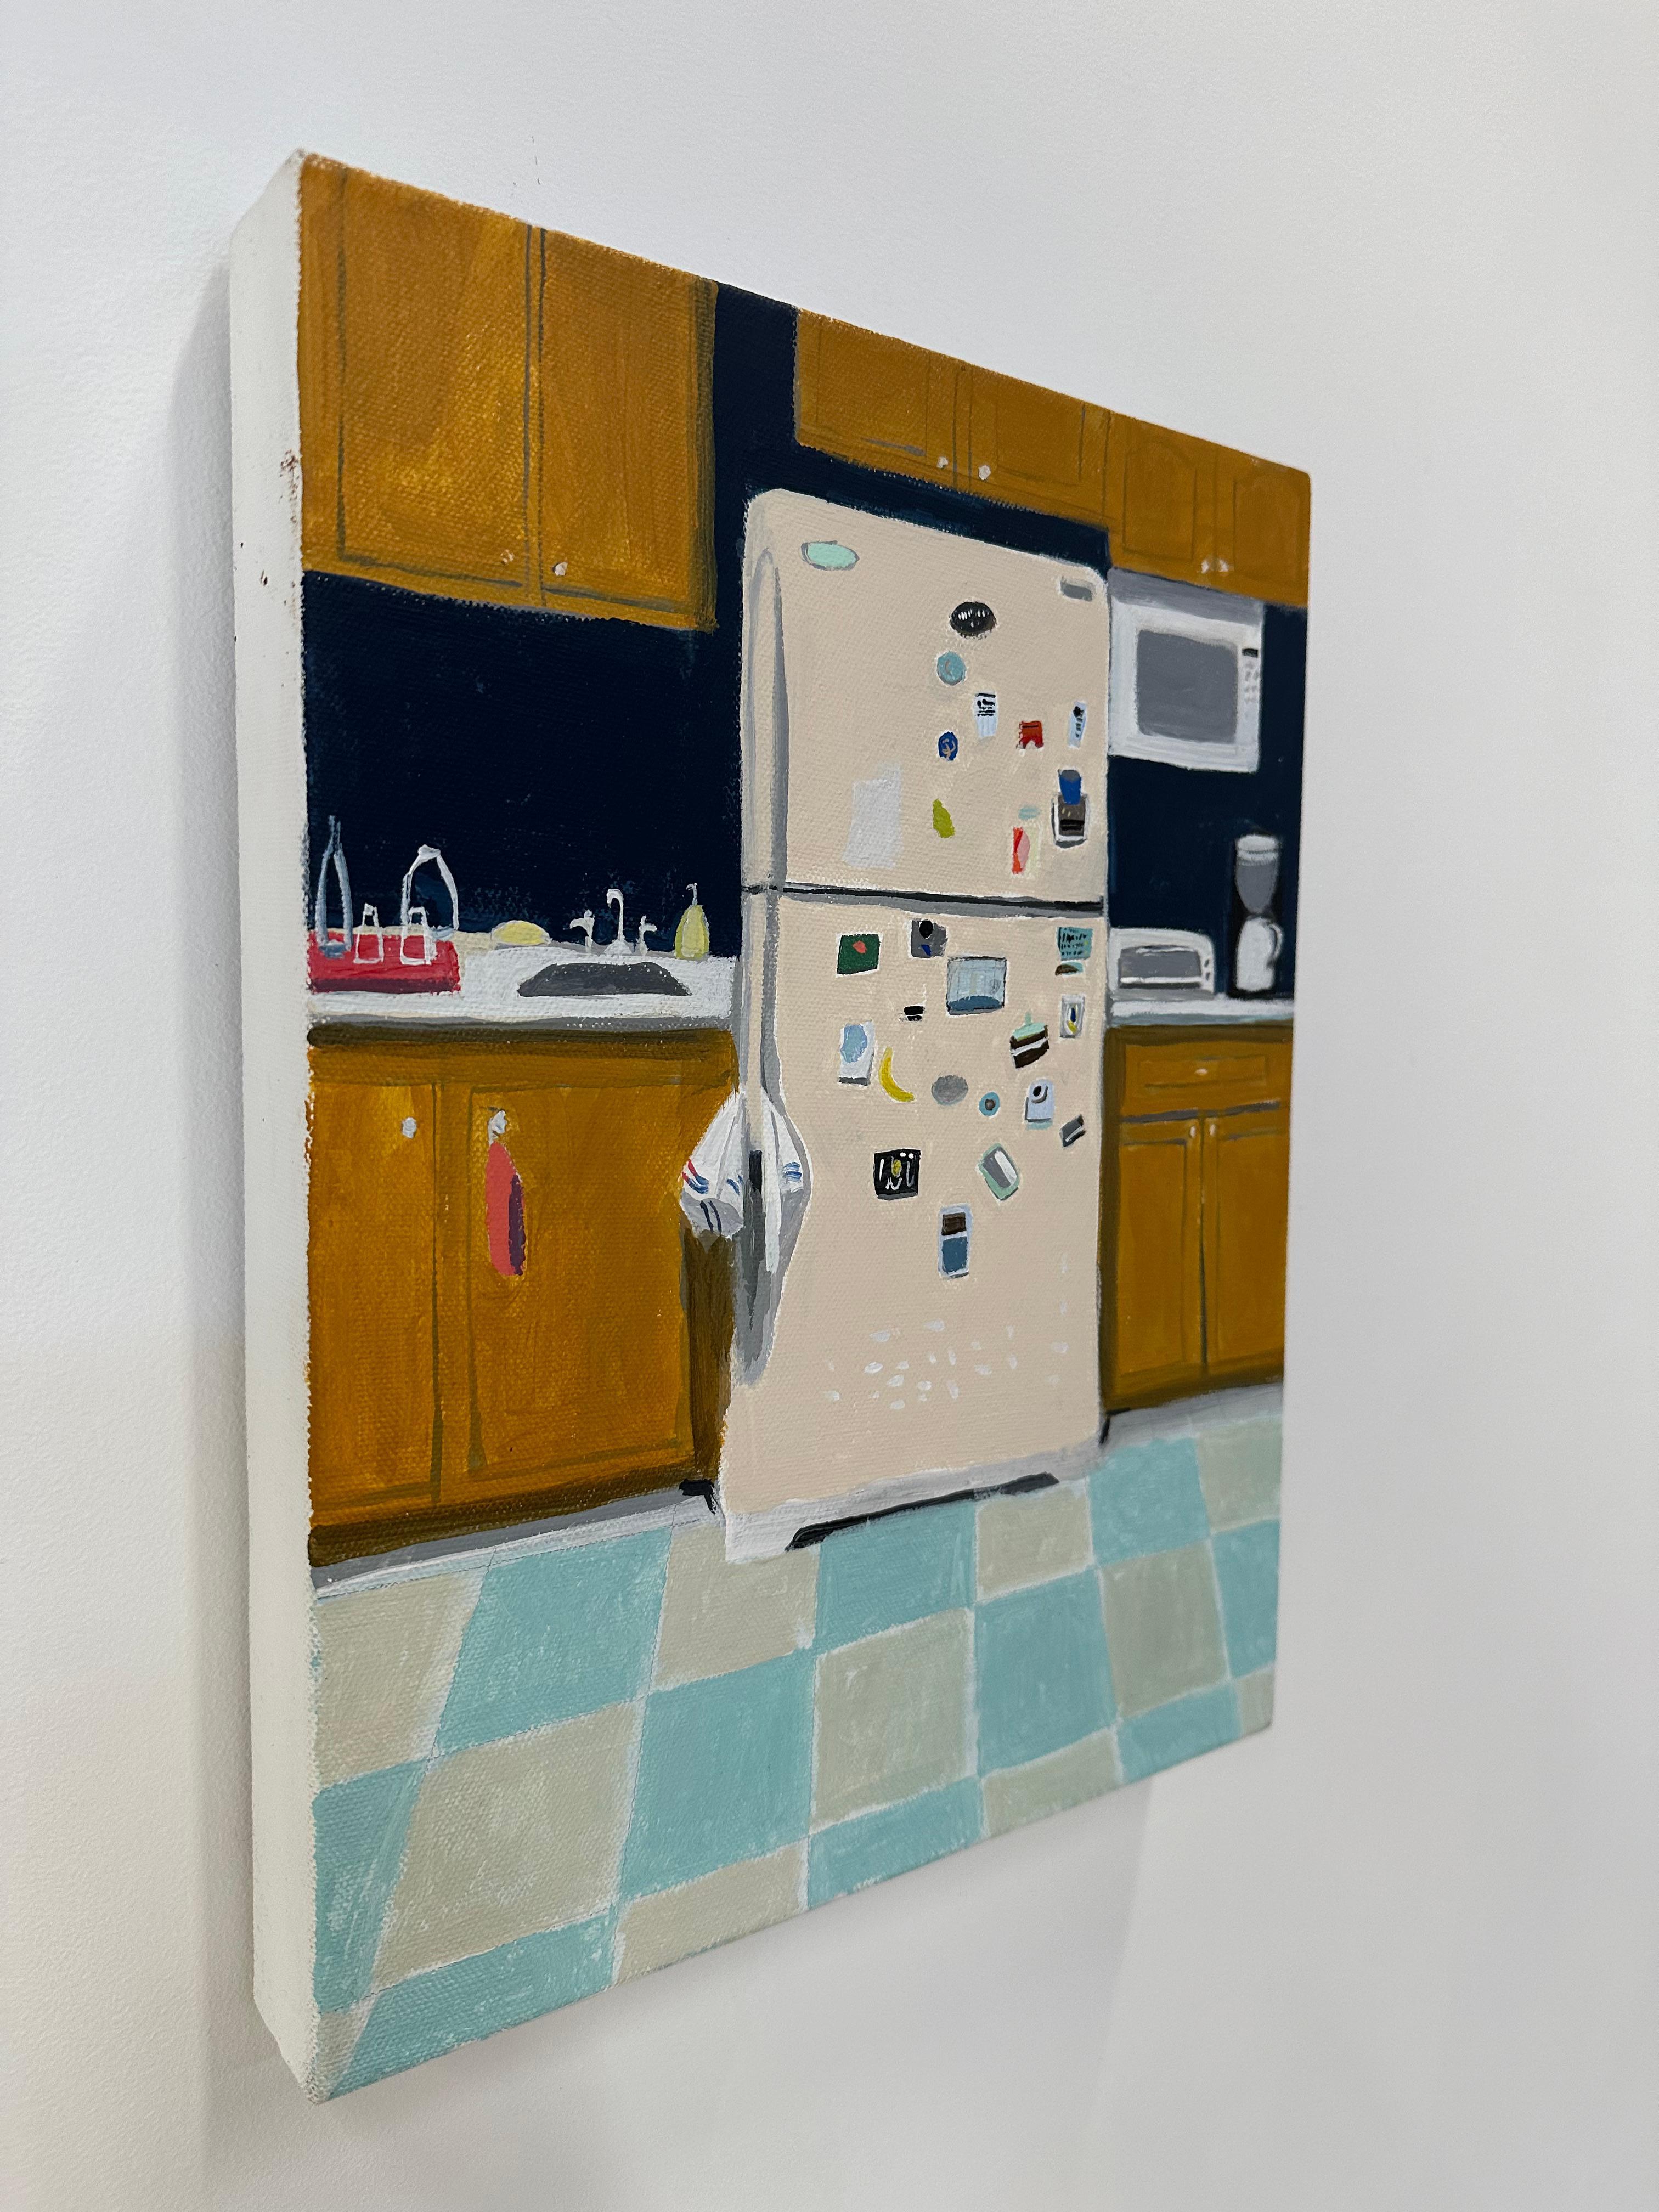 Pfirsichfarbener Reflektor, Kücheninterieur, gelbe Holzschränke, Kachelboden (Zeitgenössisch), Painting, von Polly Shindler